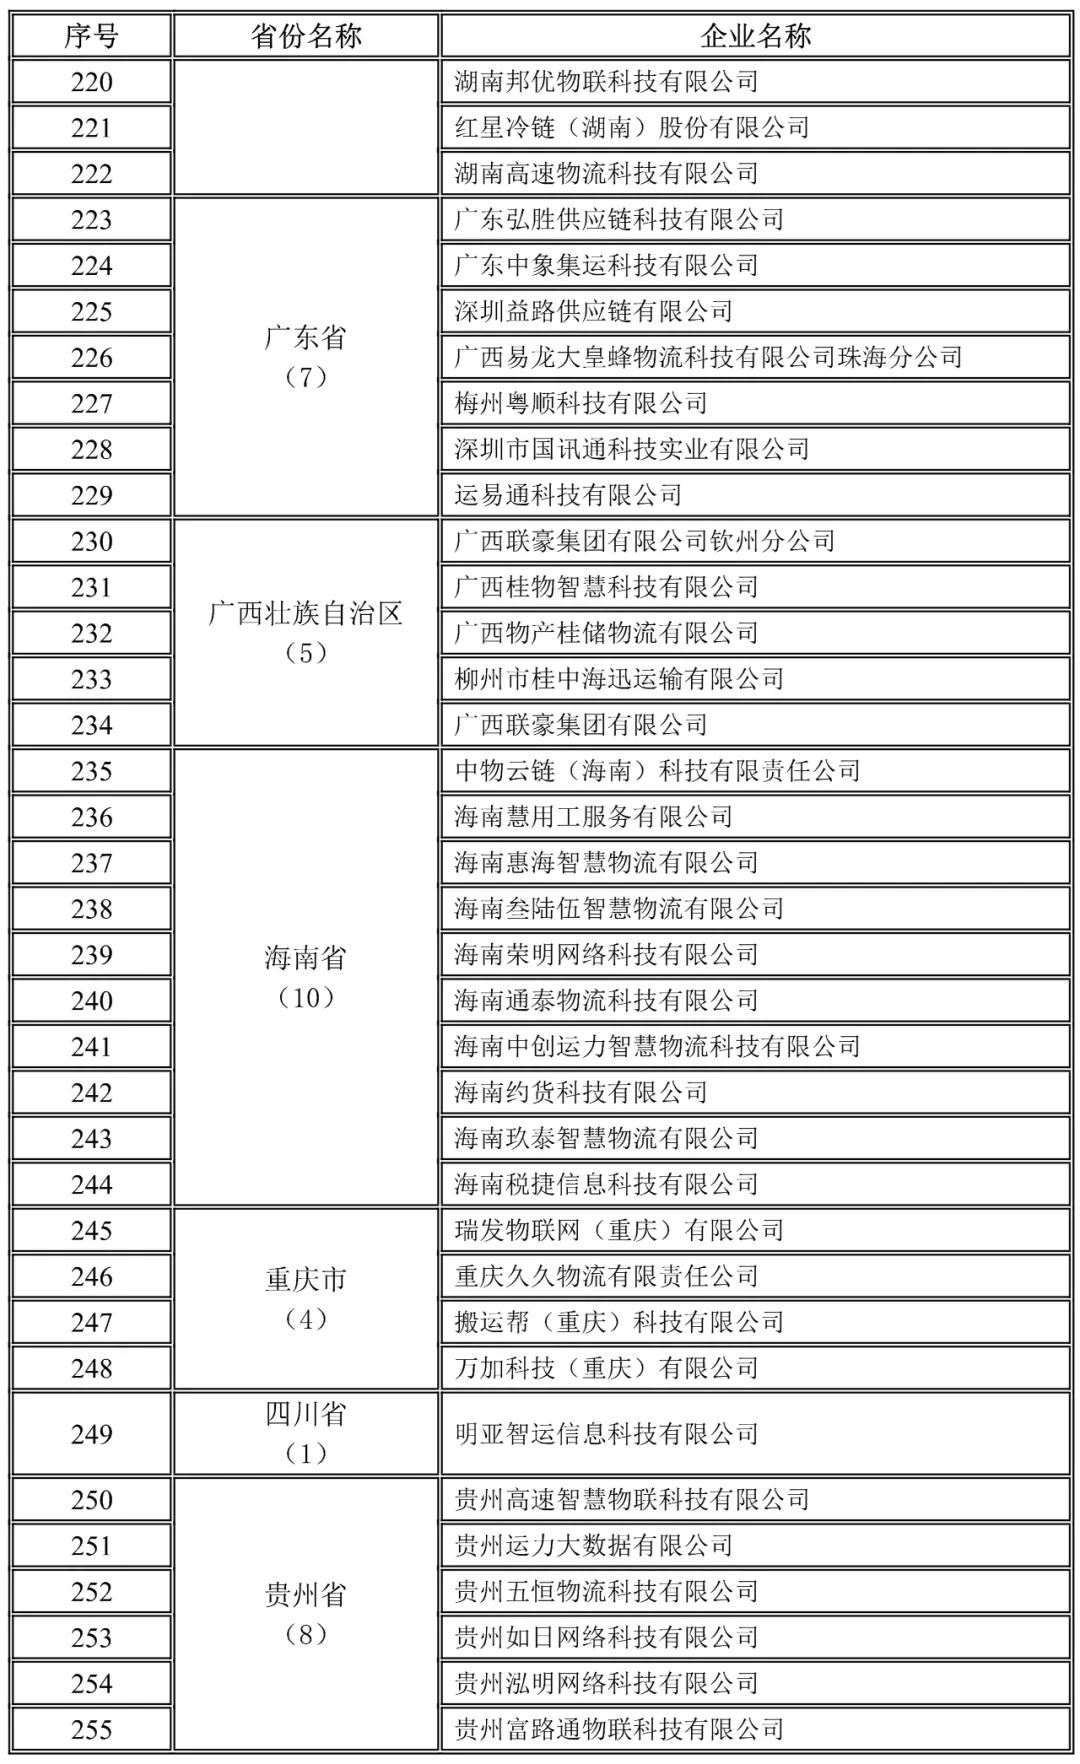 广东,广西,海南,重庆,四川,贵州地方网络货运企业未上传运单企业名录